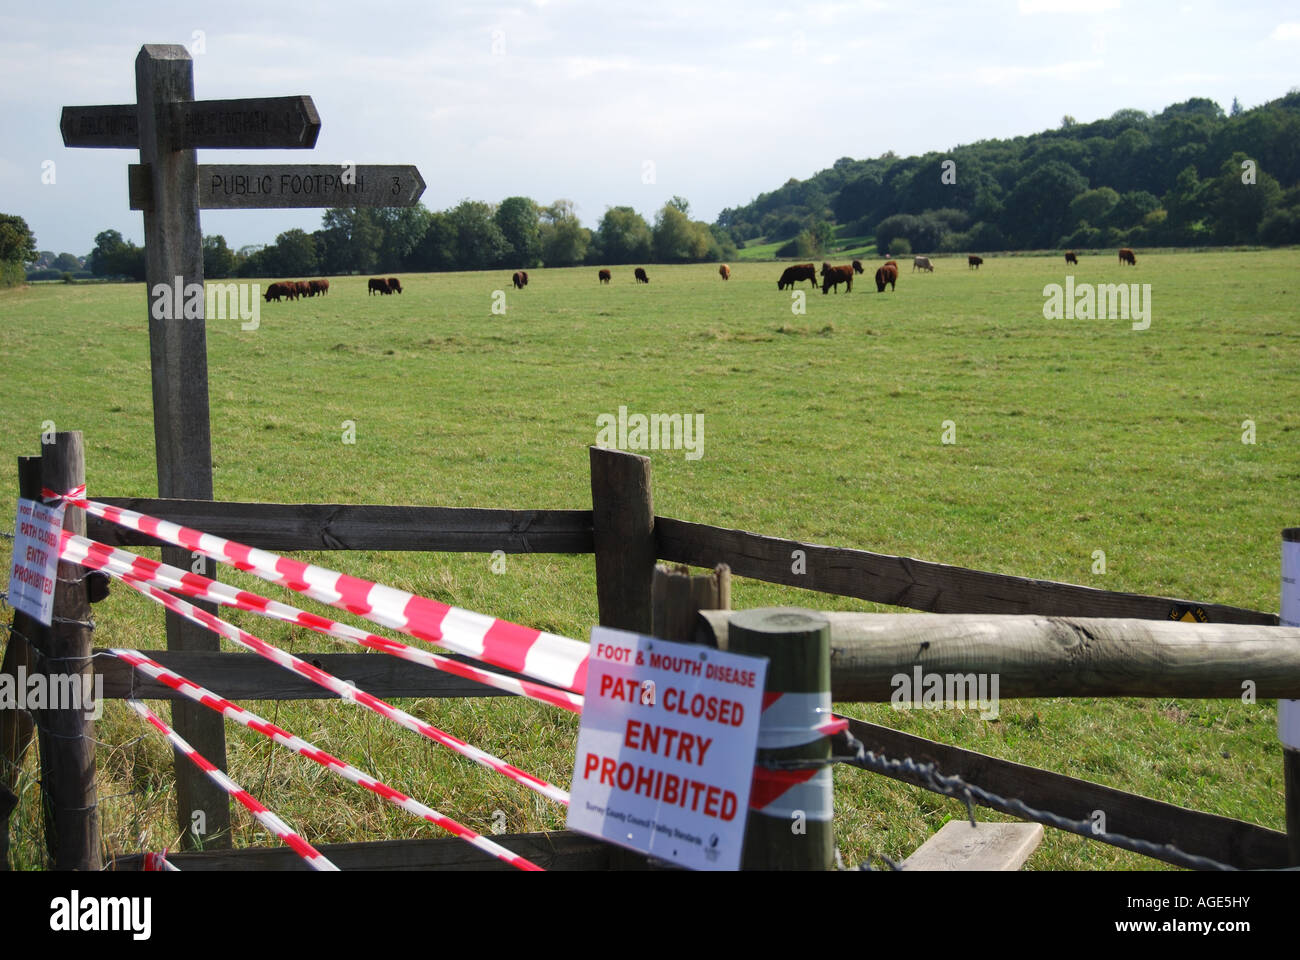 Épizootie de fièvre aphteuse 'Entrée interdite' signe, Runnymede, Surrey, Angleterre, Royaume-Uni Banque D'Images